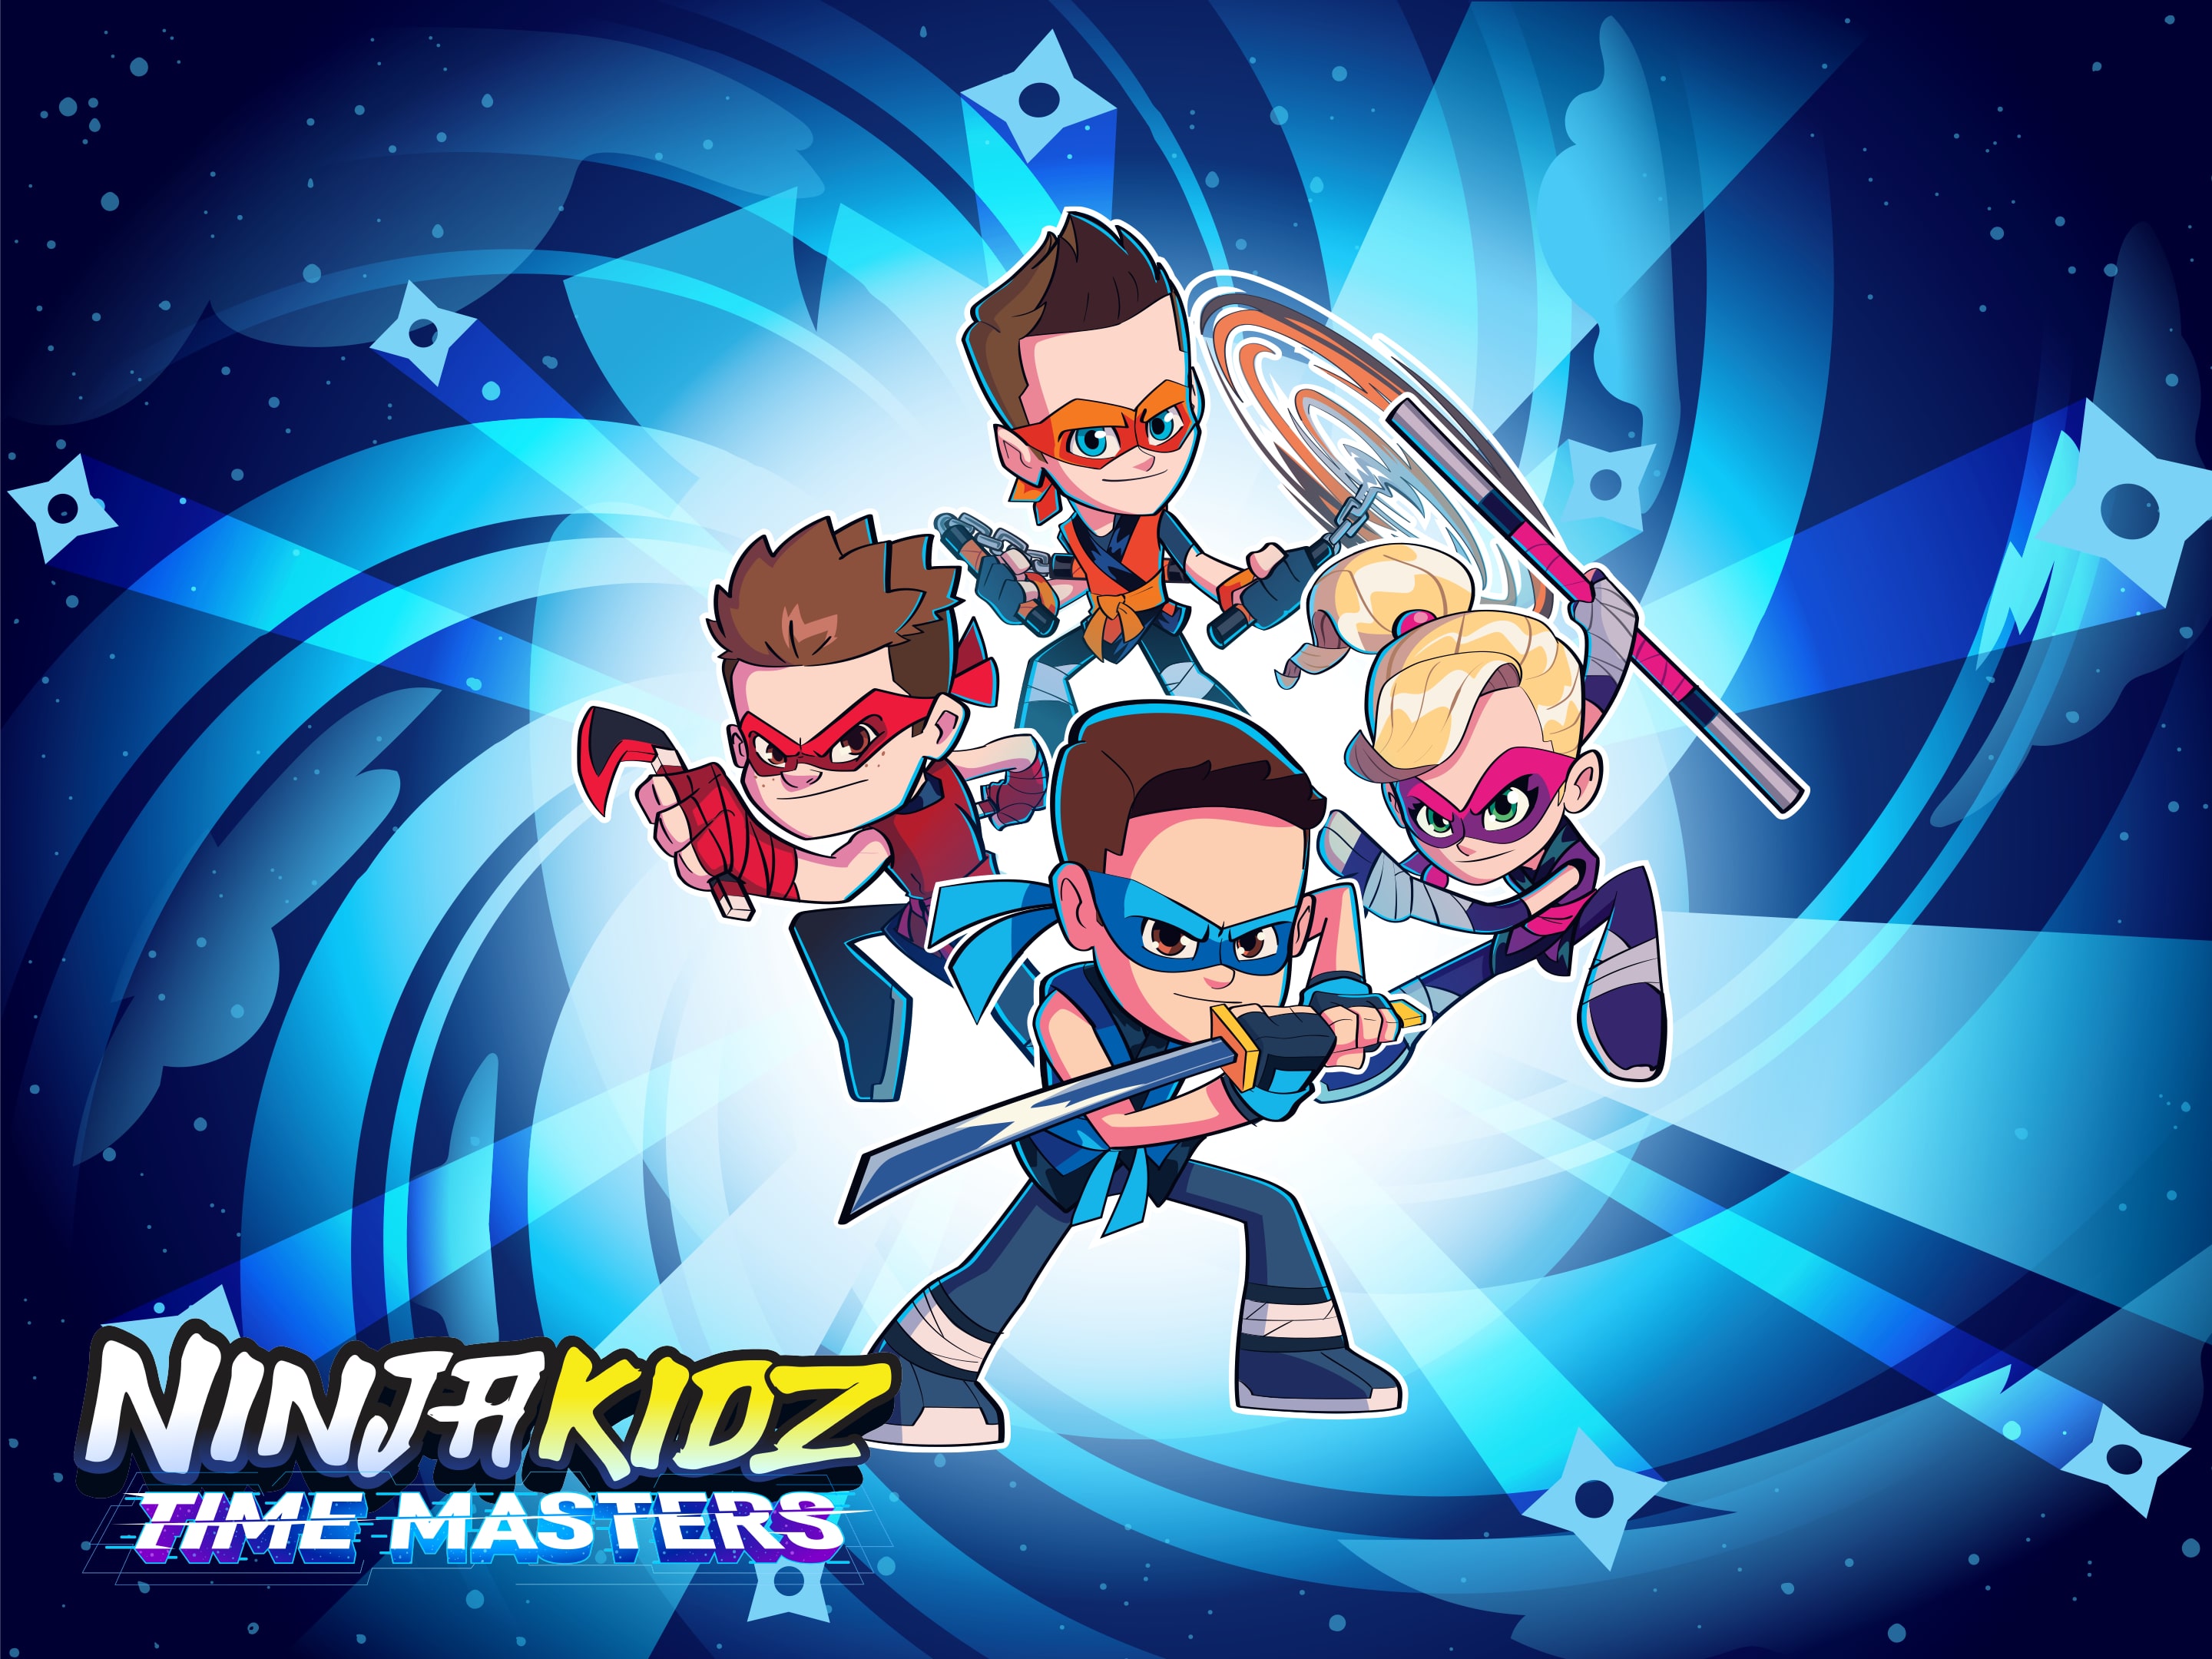 Ninja Kidz Time Masters PlayStation 4 - Best Buy